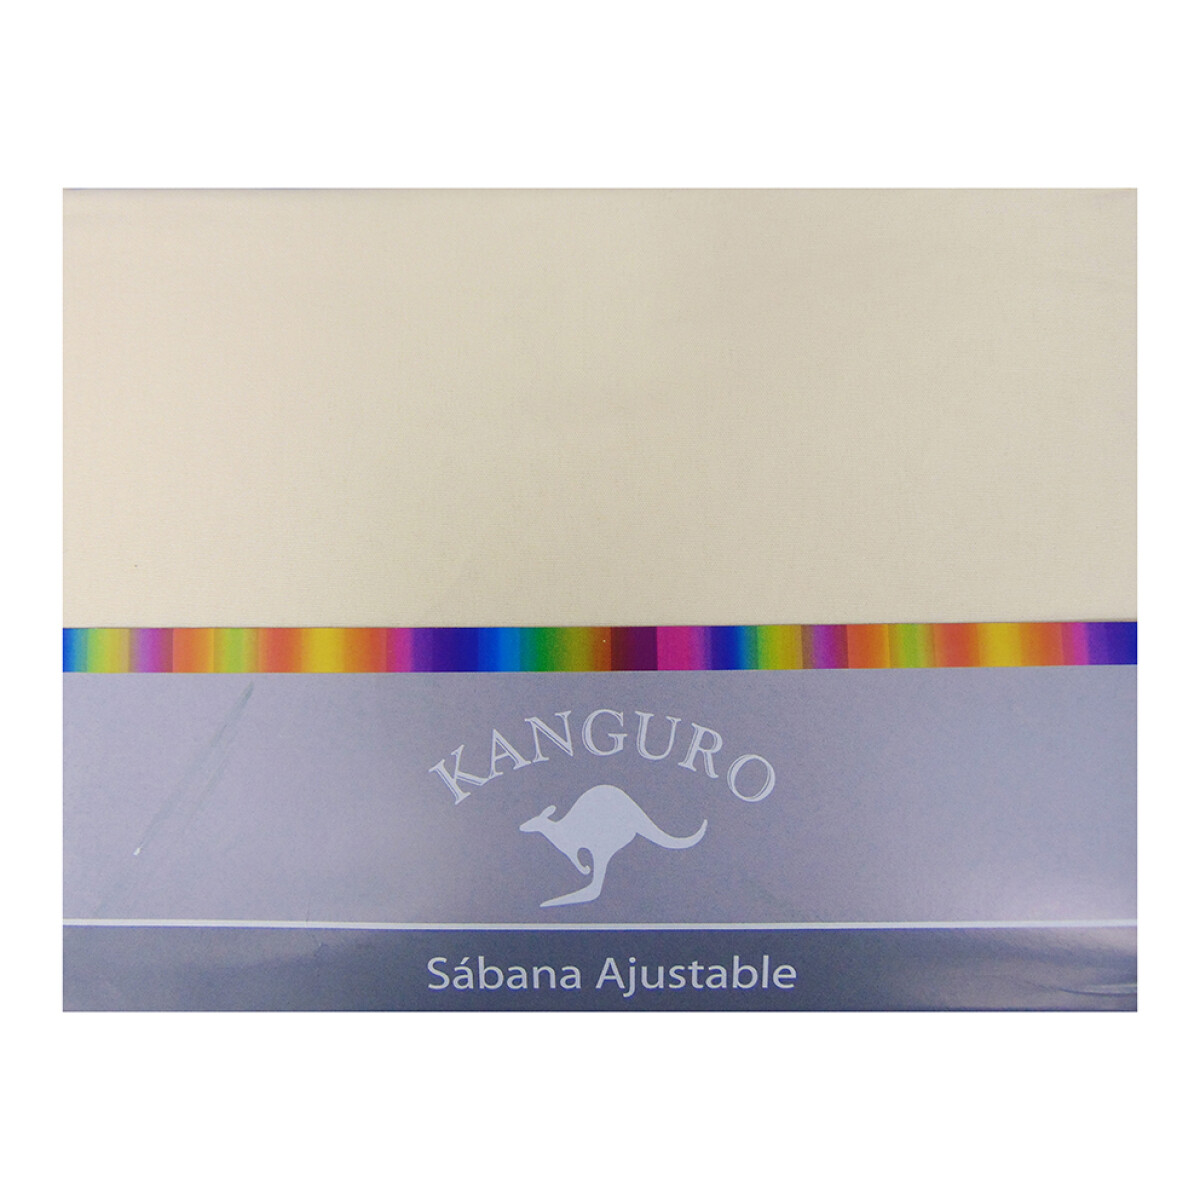 Sábana Ajustable King Size Bukara Kanguro 100% Microfibra - CREMA 